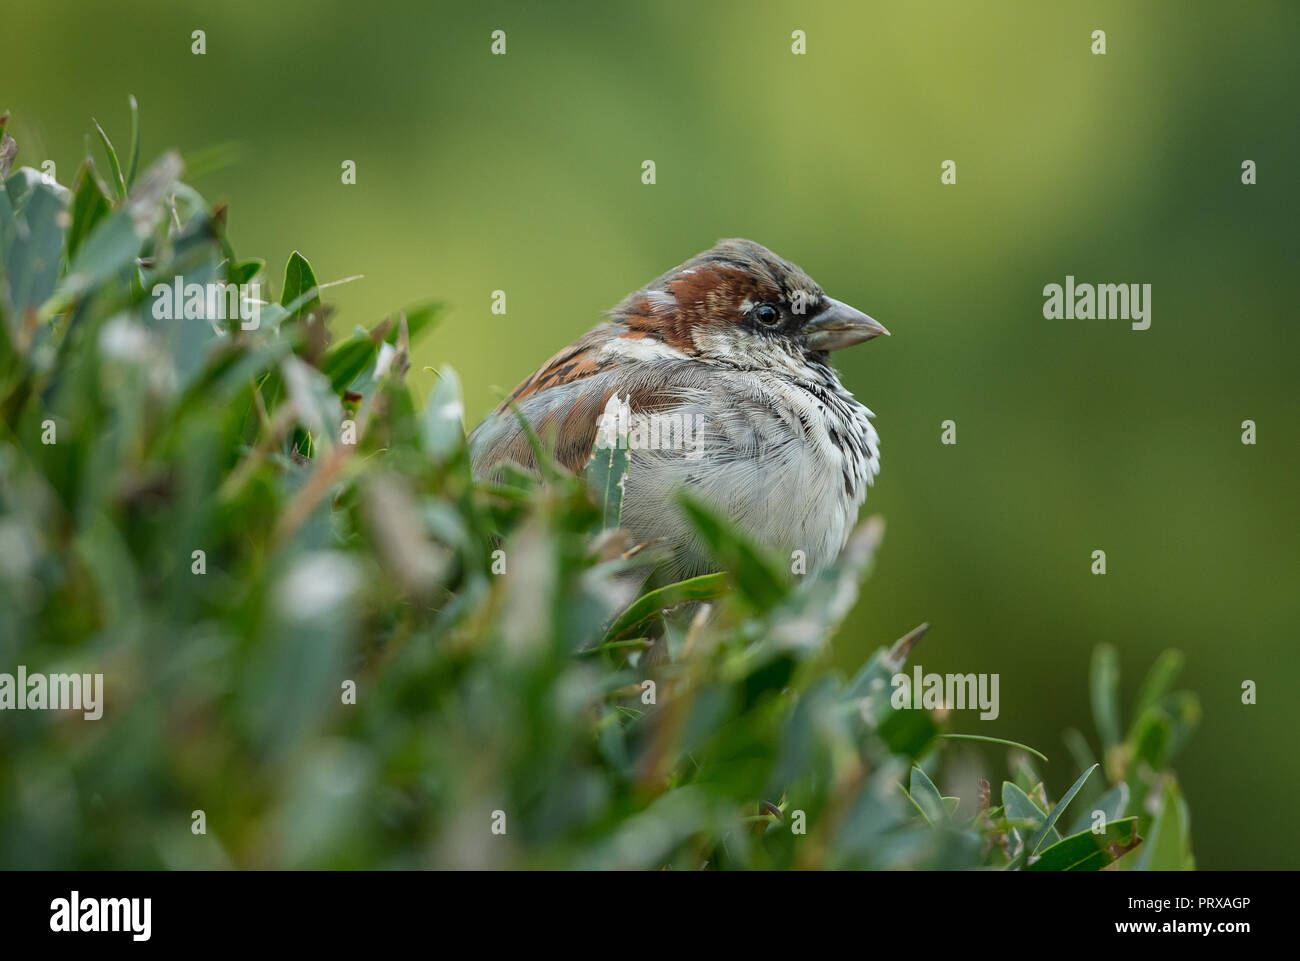 Gorrión de árbol. Nombre científico: Passer montanus) macho tree sparrow encaramado en el hábitat natural de los arbustos del jardín. Mirando hacia la derecha. Horizontal. Foto de stock